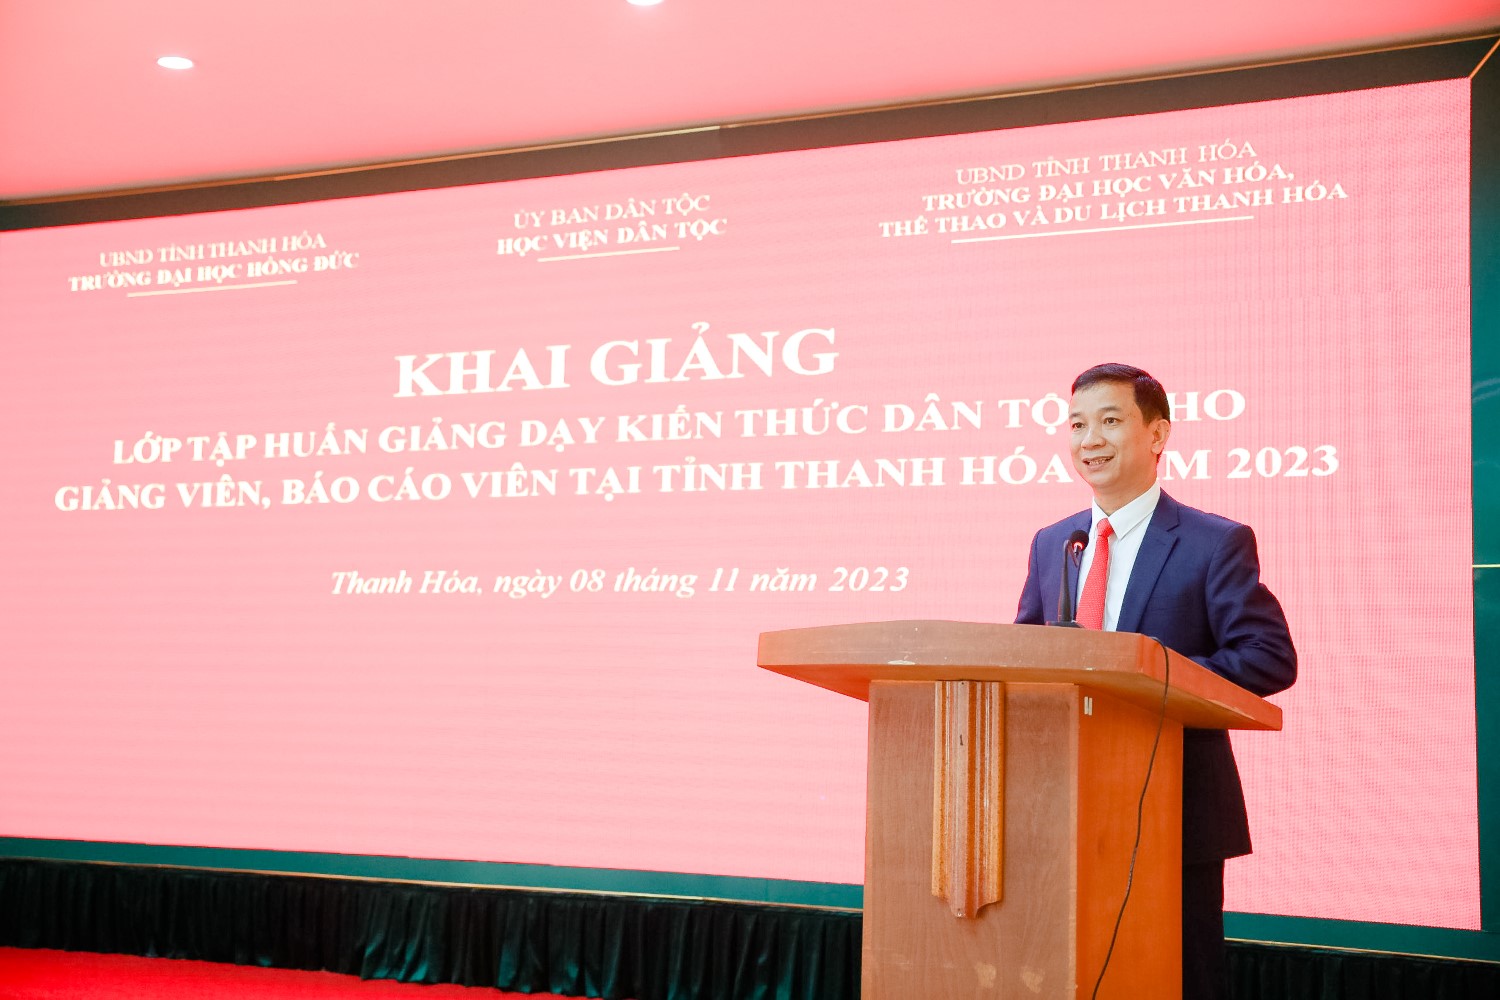 Khai giảng lớp tập huấn giảng dạy kiến thức dân tộc cho giảng viên, báo cáo viên tại tỉnh Thanh Hóa năm 2023